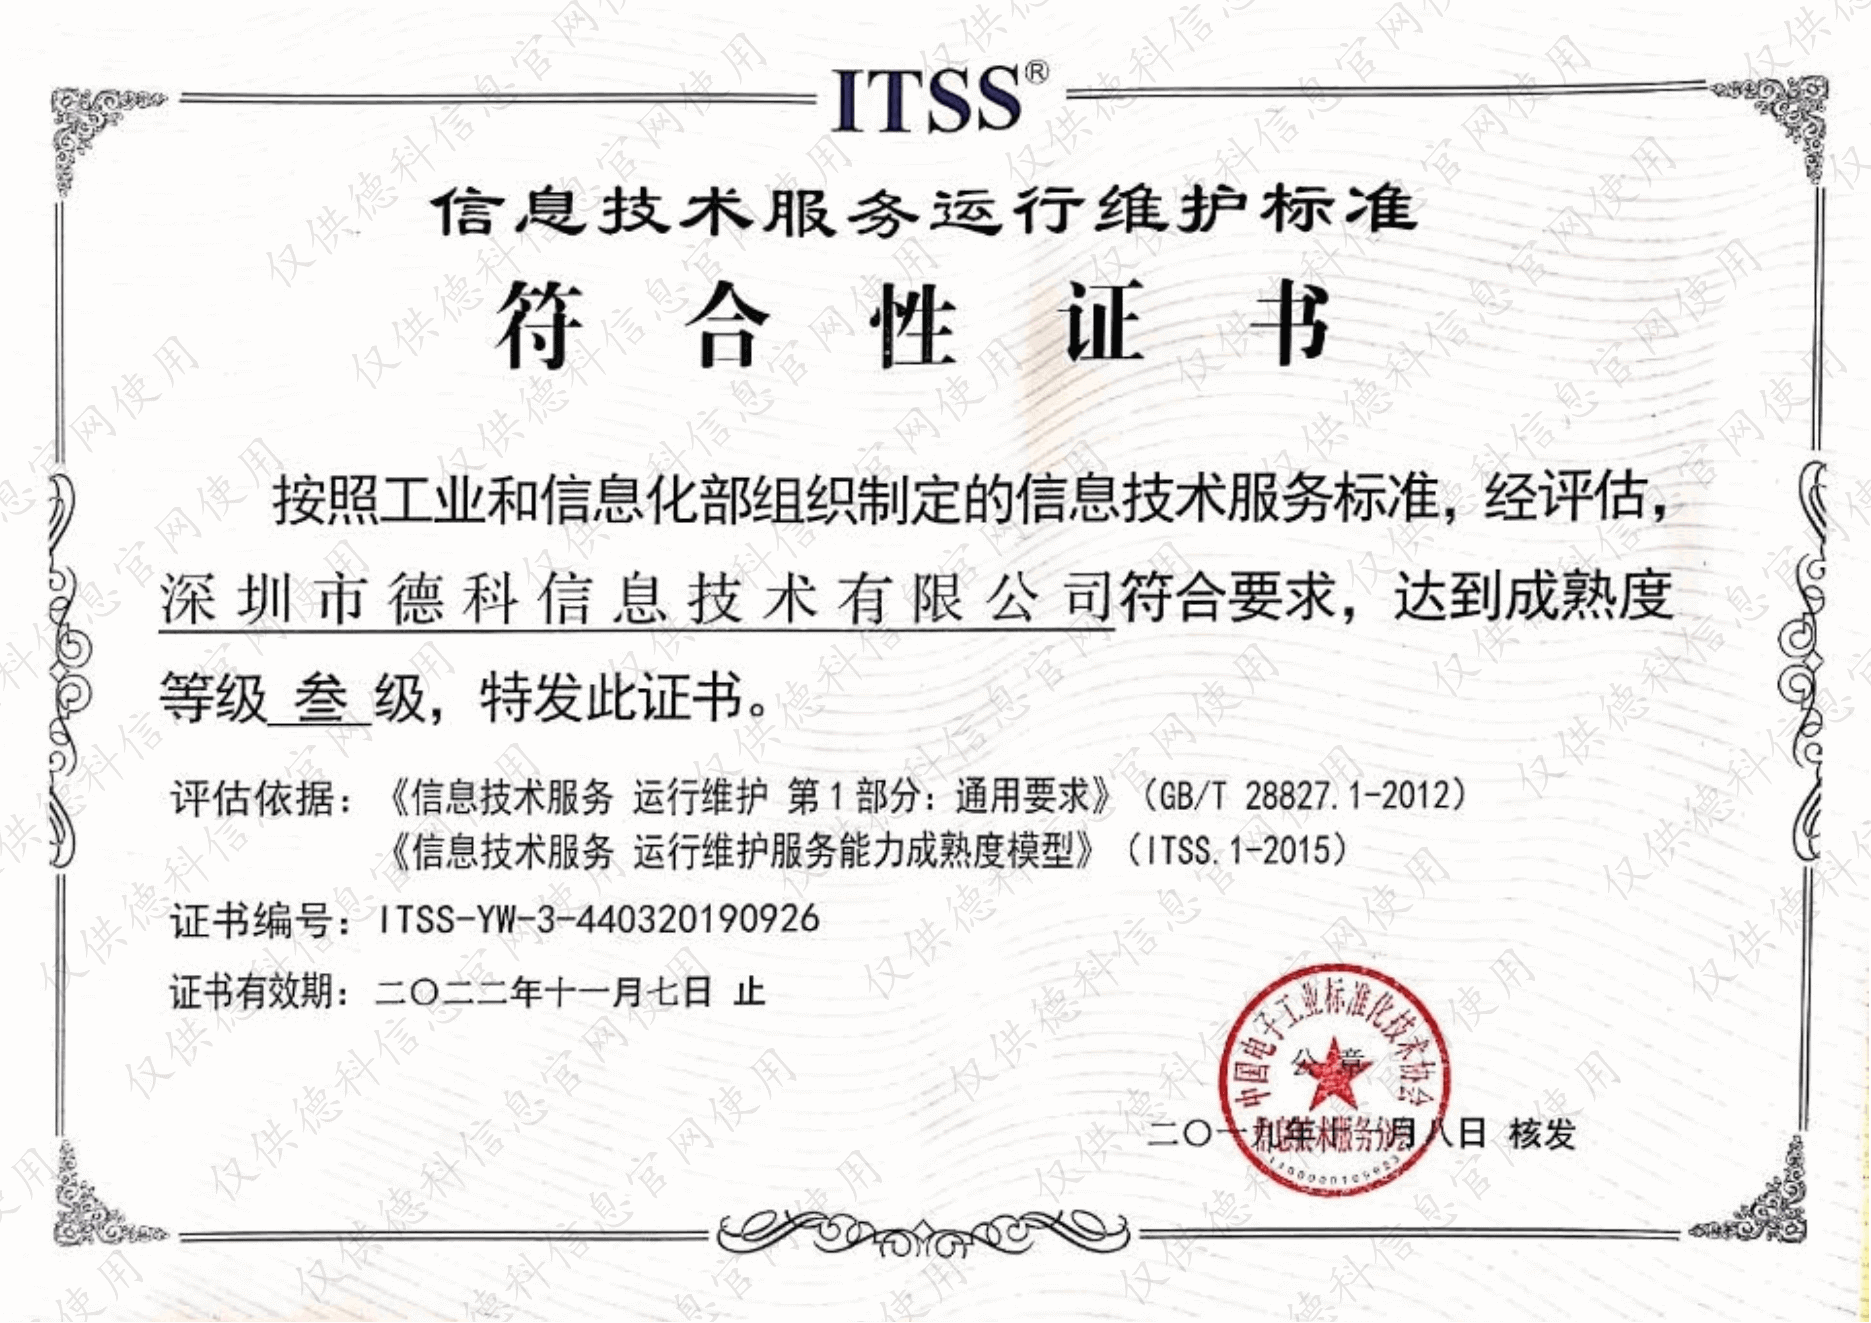 ITSS运维服务标准认证